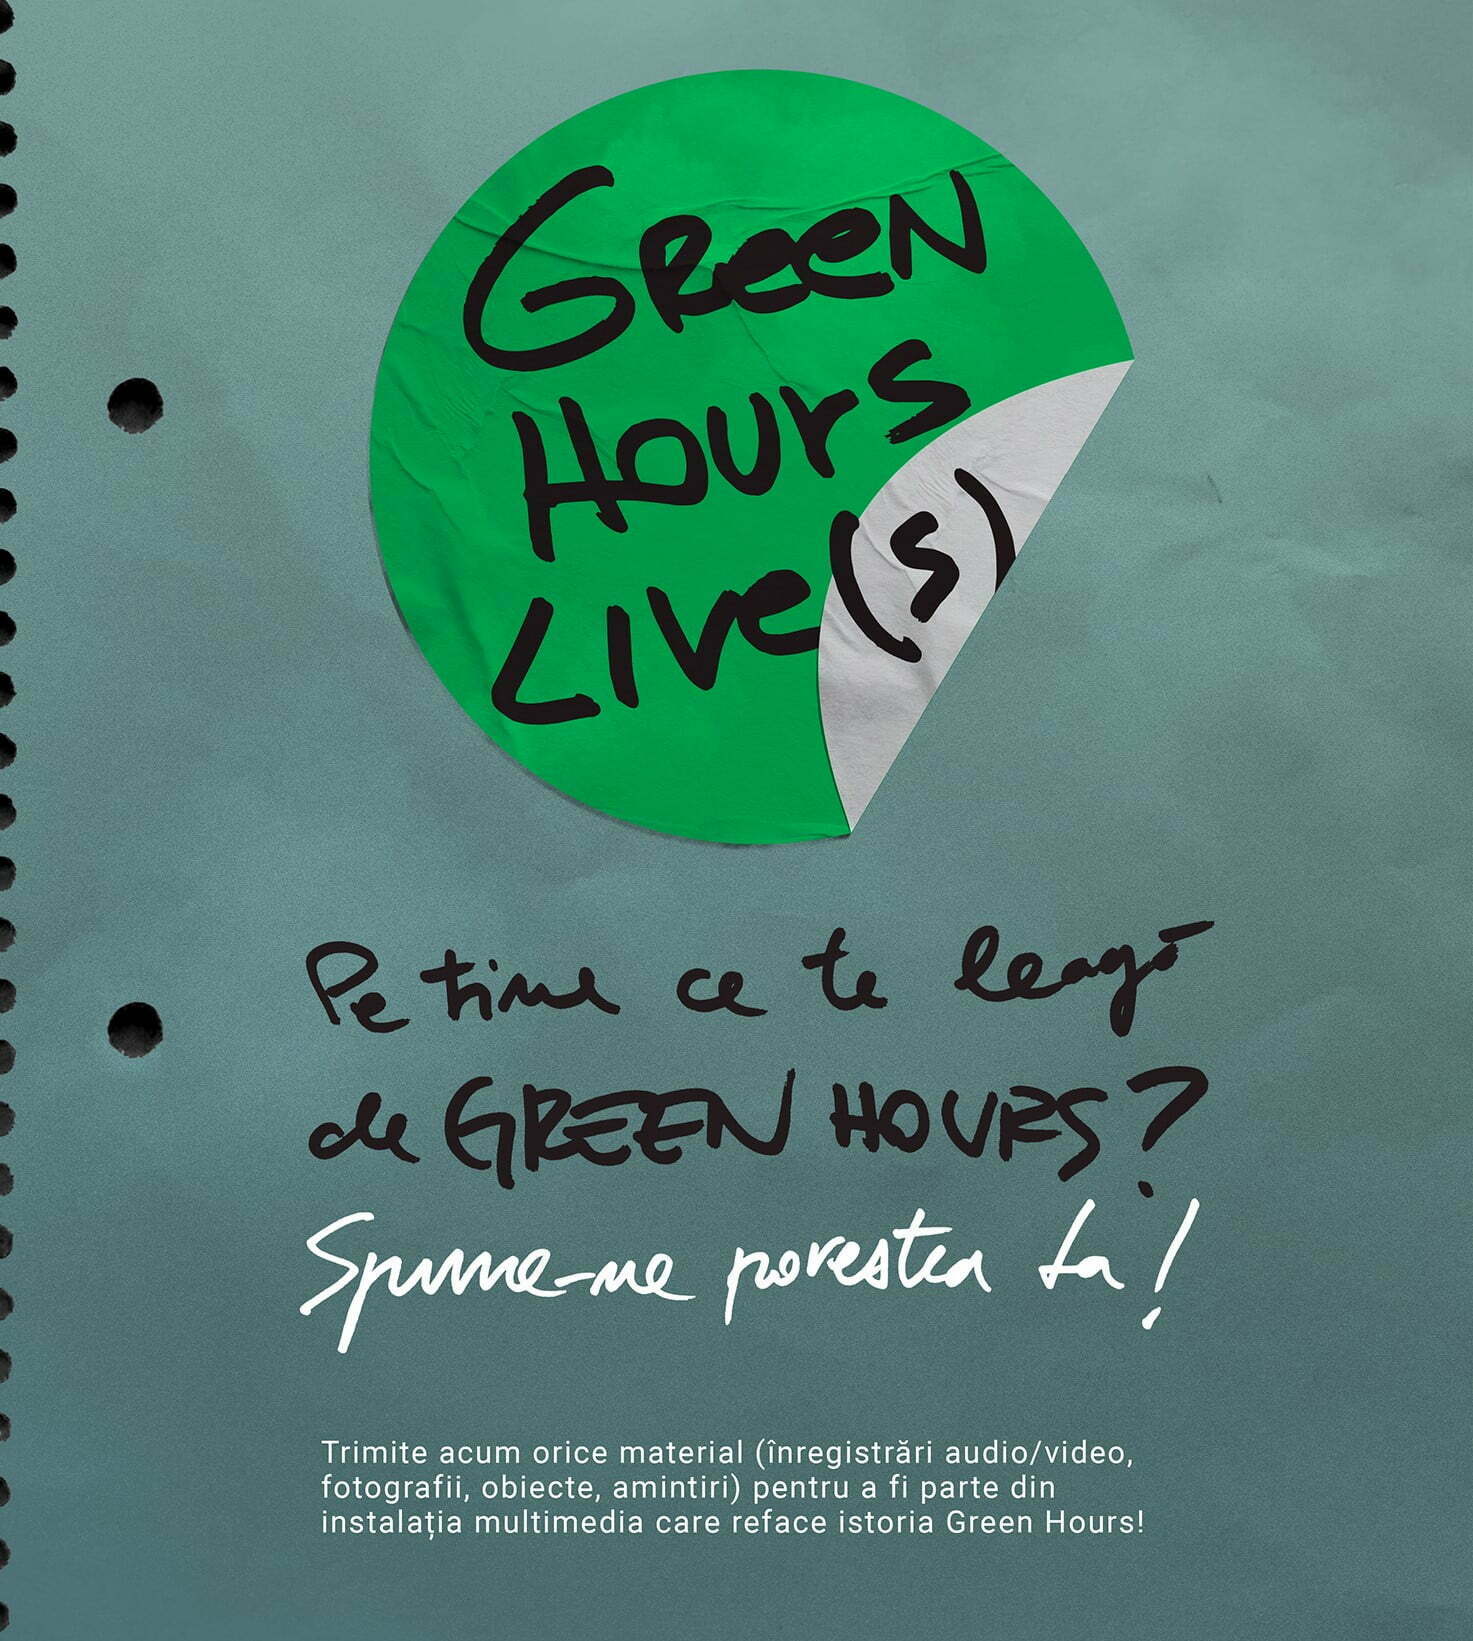 Obiecte şi poveşti legate de Green Hours vor fi transformate într-o instalaţie multimedia